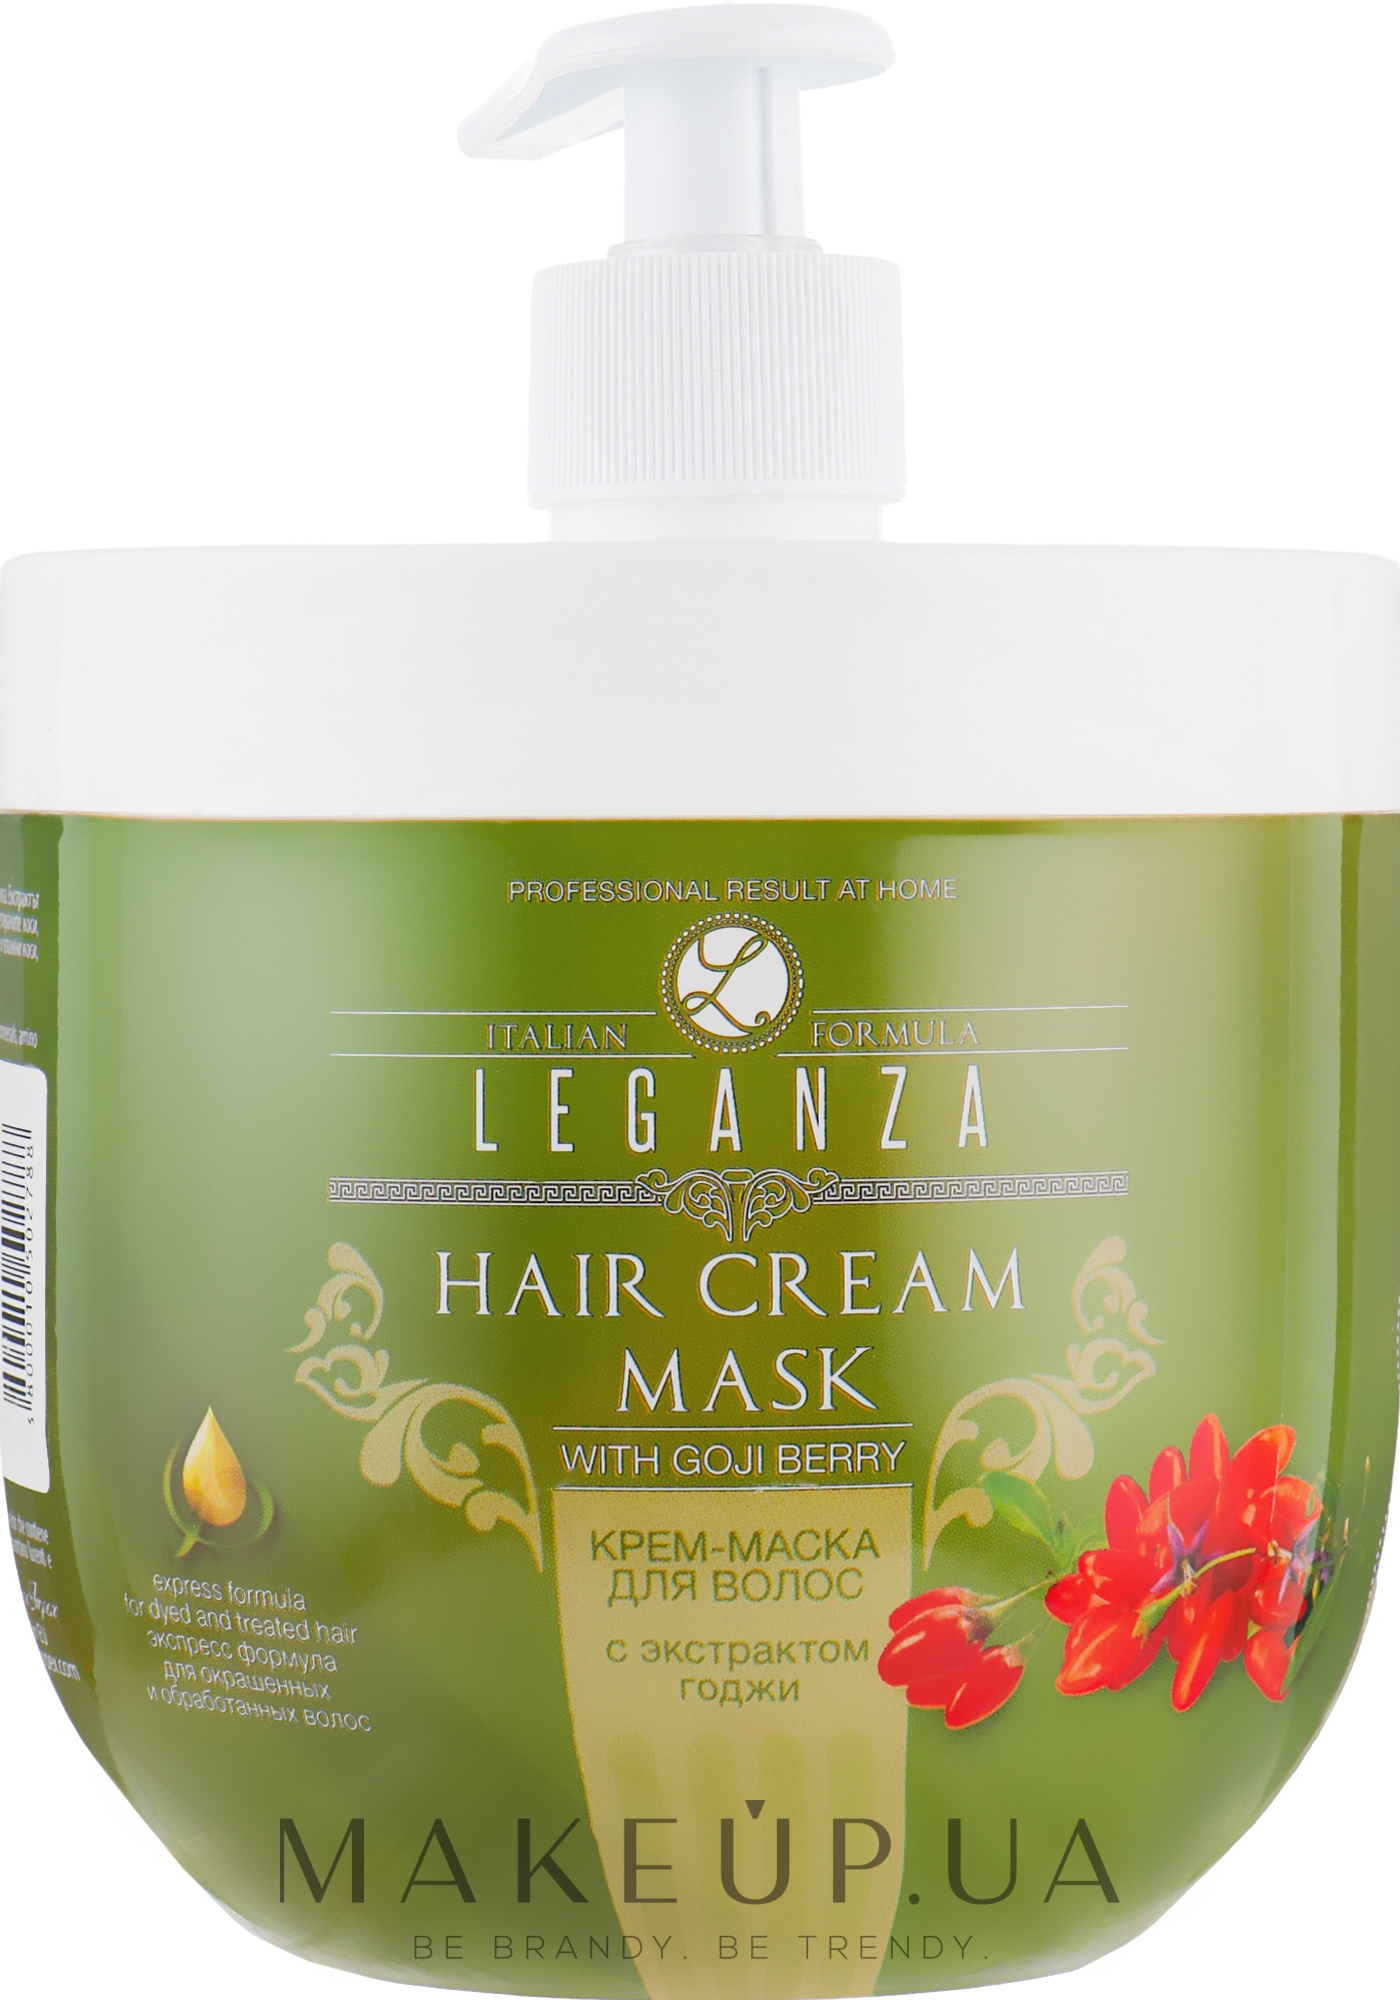 Крем-маска для волос с экстрактом годжи - Leganza Cream Hair Mask With Extract Of Goji Berry (с дозатором) — фото 1000ml